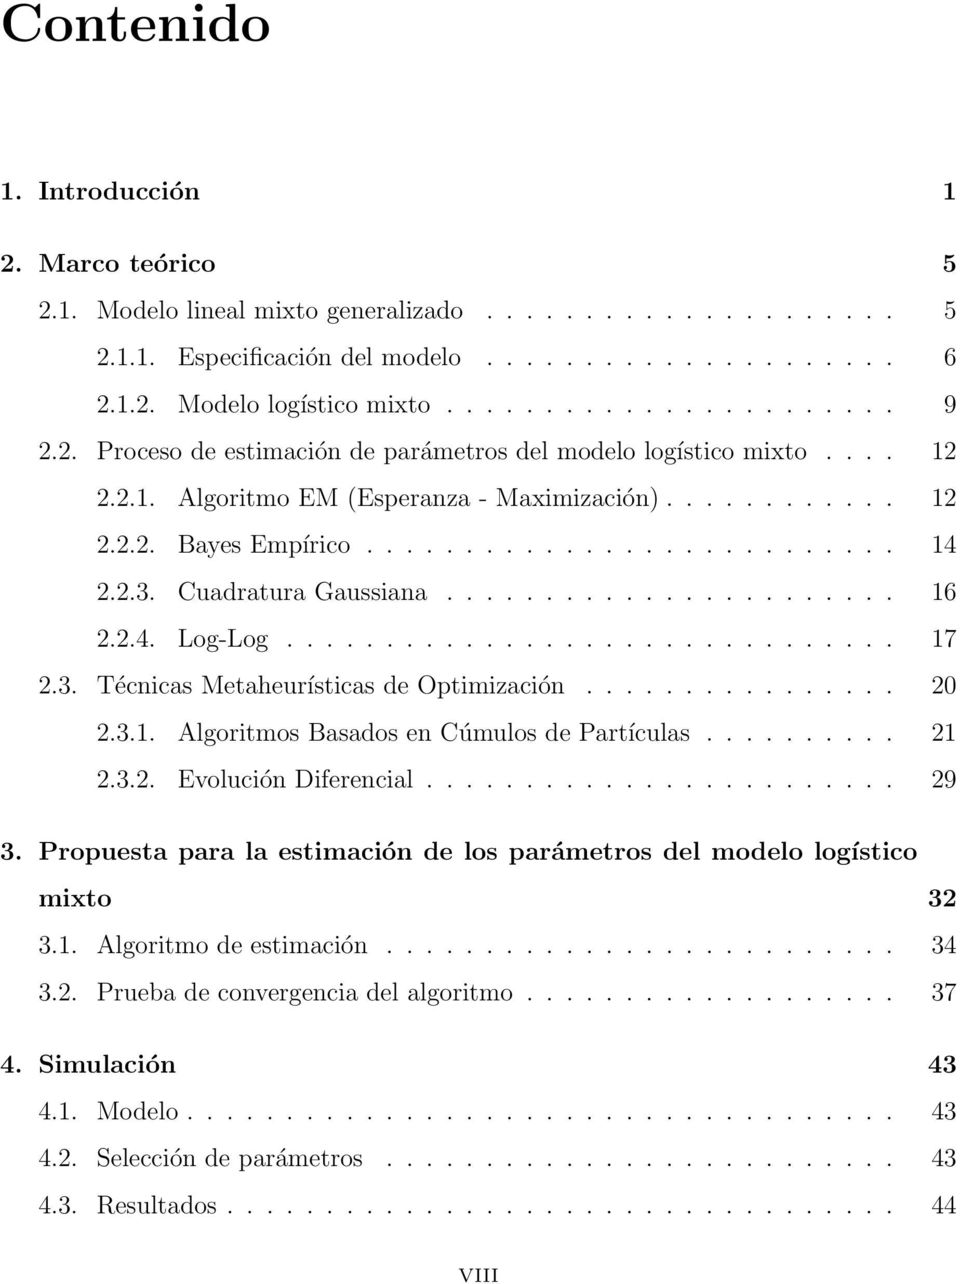 Cuadratura Gaussiana....................... 16 2.2.4. Log-Log............................... 17 2.3. Técnicas Metaheurísticas de Optimización................ 20 2.3.1. Algoritmos Basados en Cúmulos de Partículas.